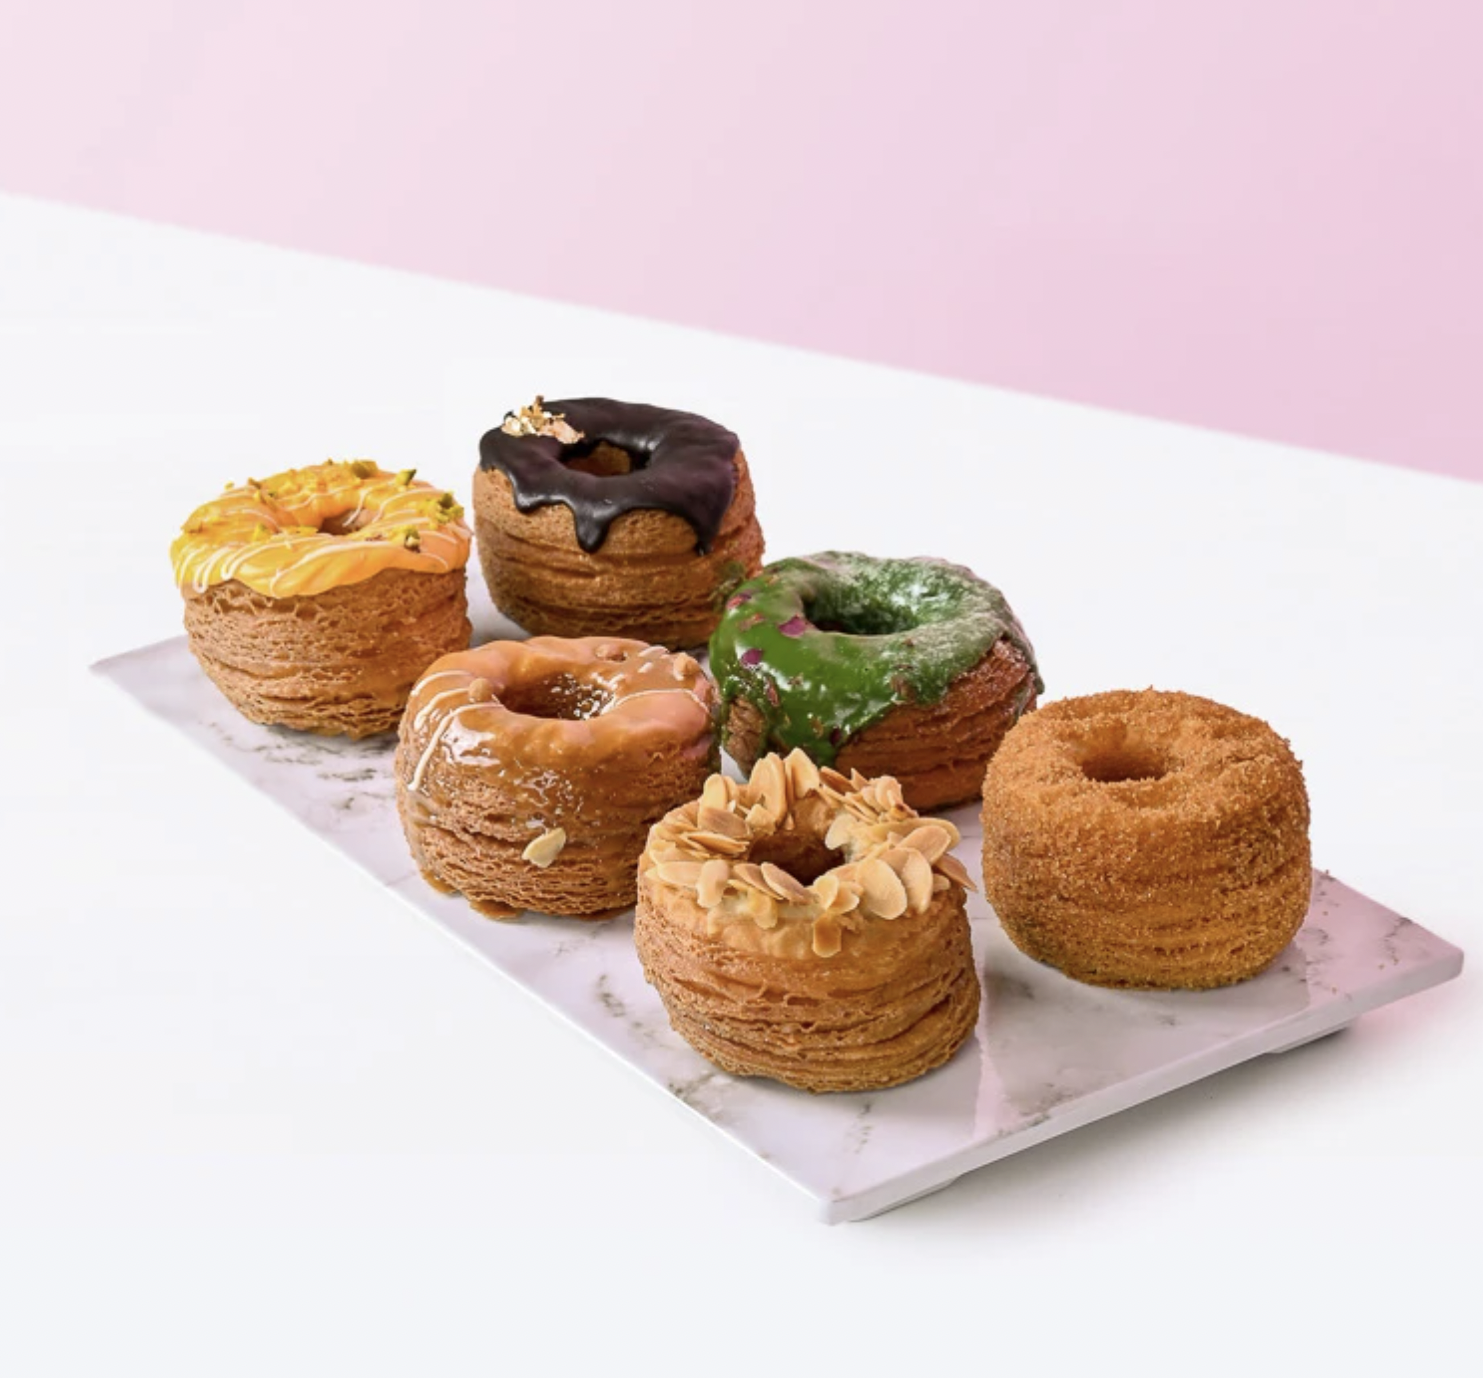 Cronuts - unique pastries